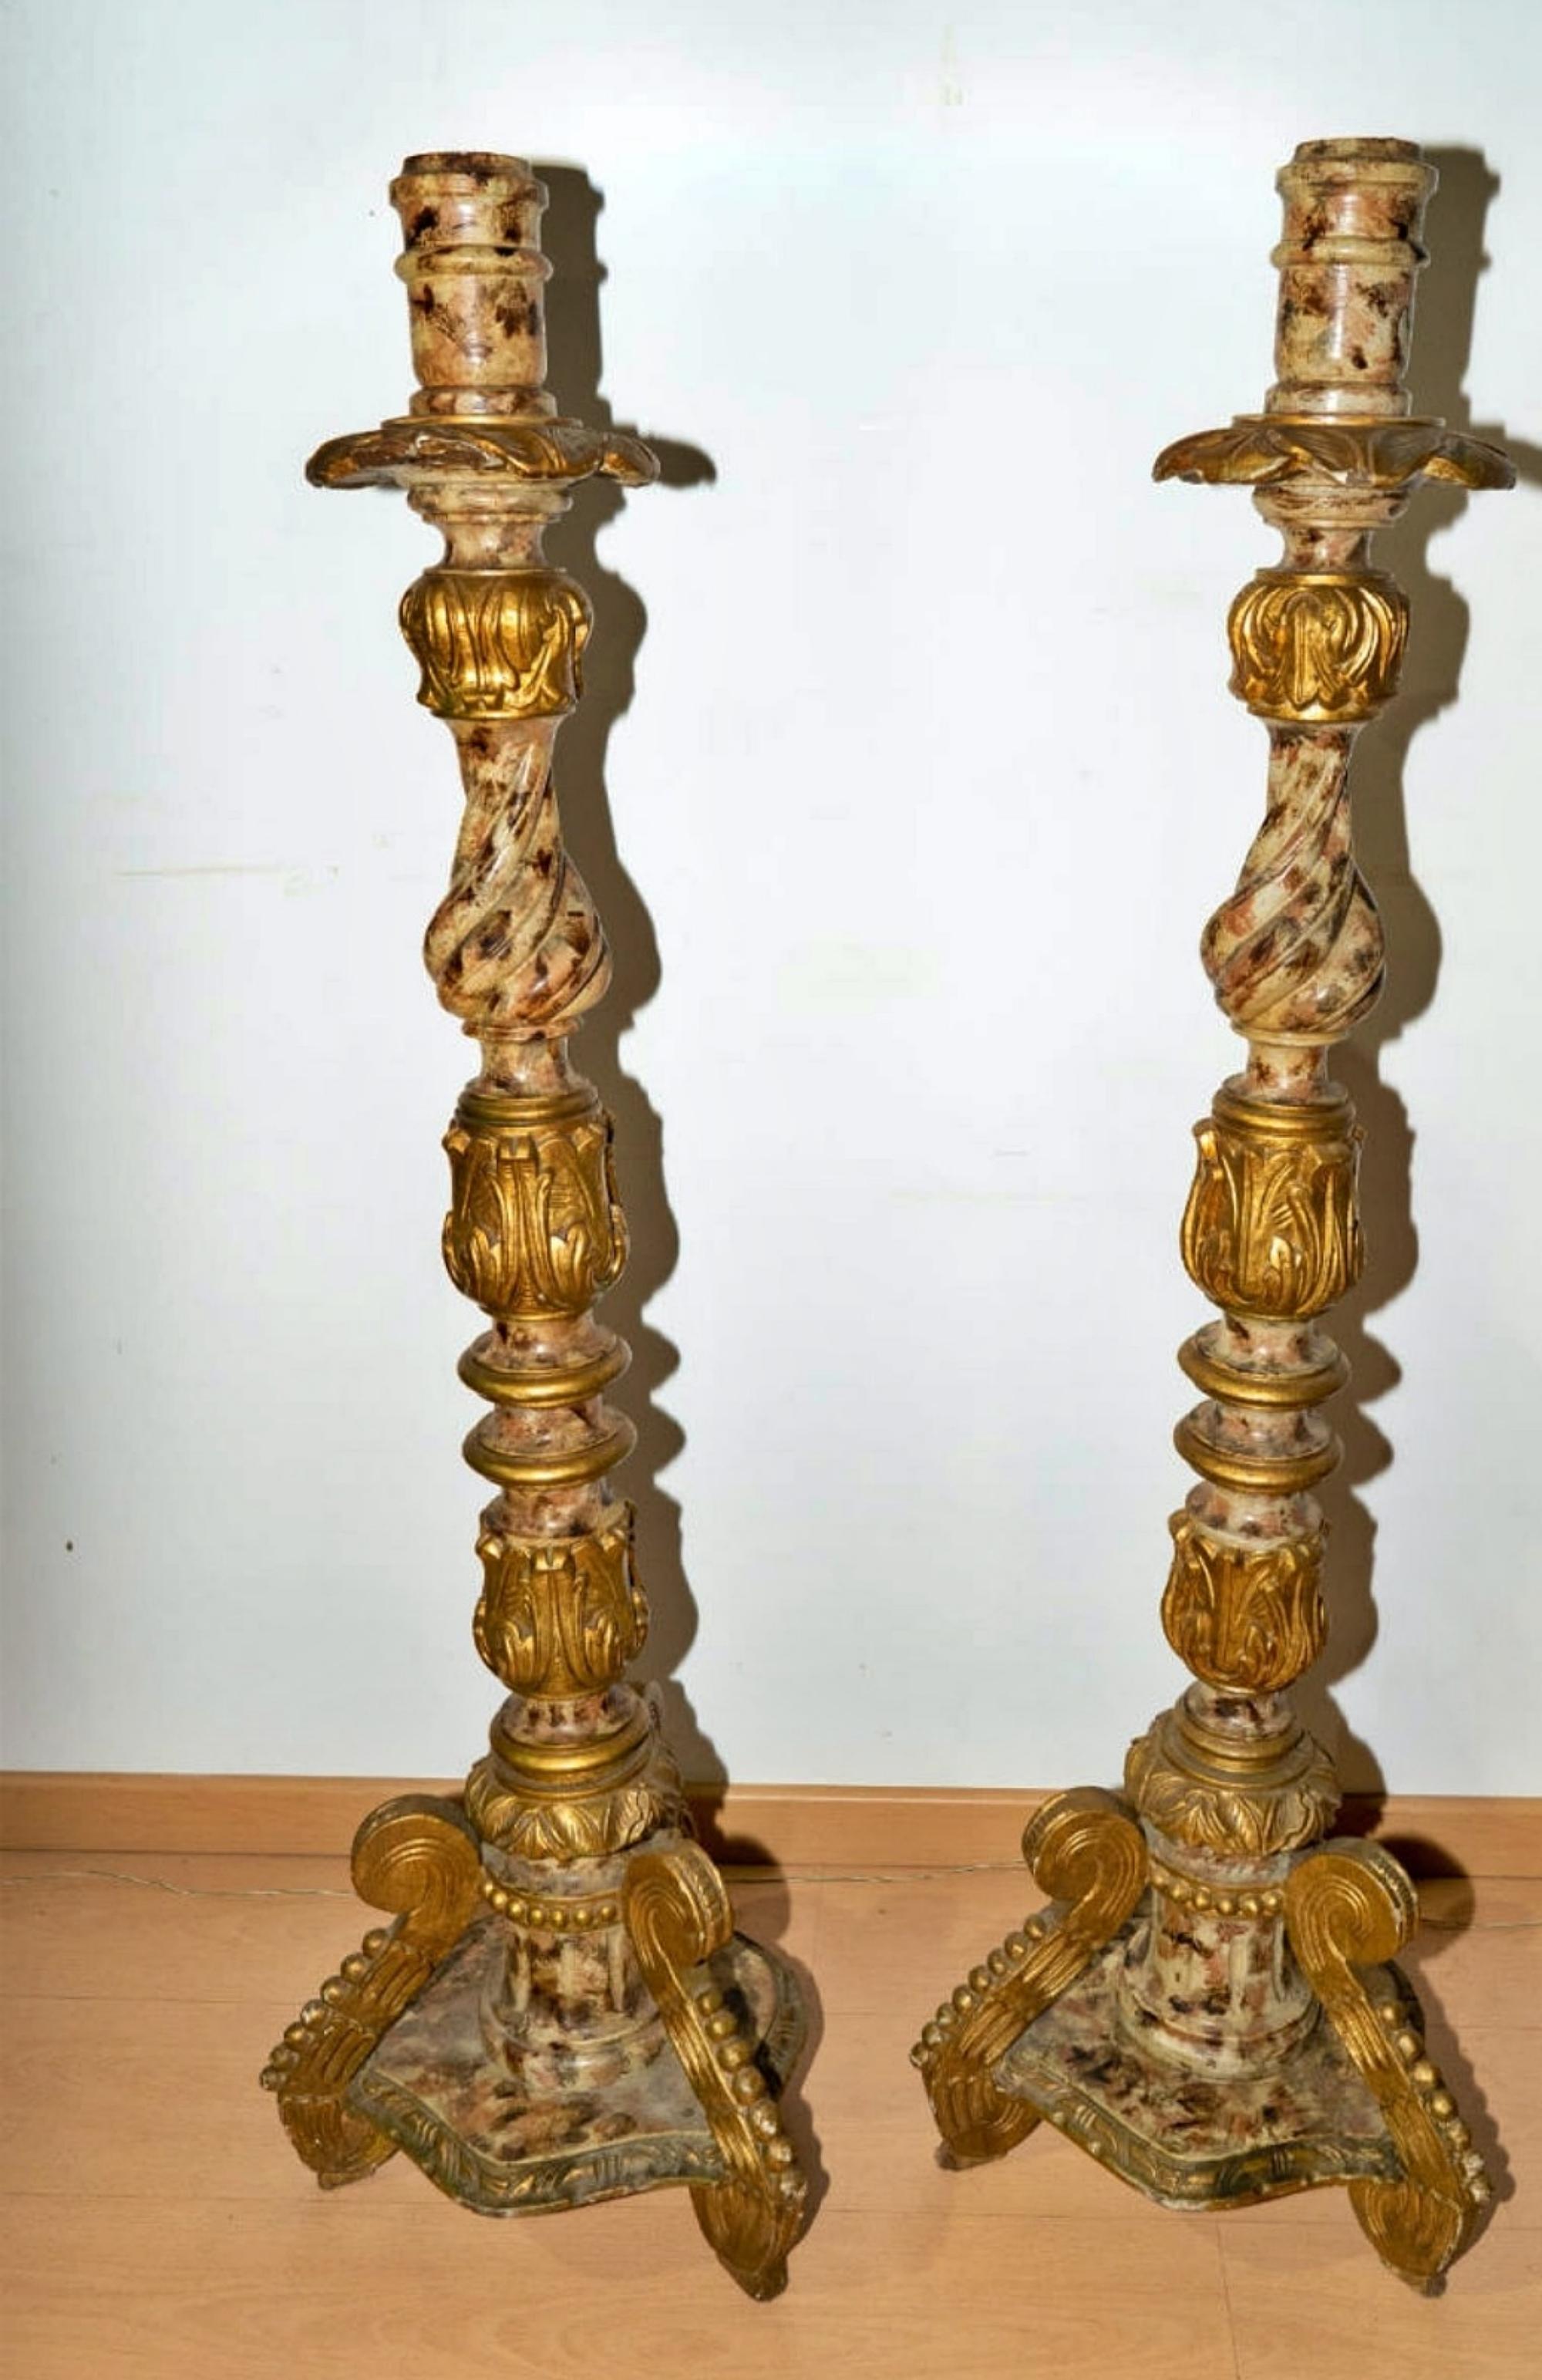 Paire de chandeliers espagnols du 18e siècle
Mesure : hauteur 132cm
Bonnes conditions.